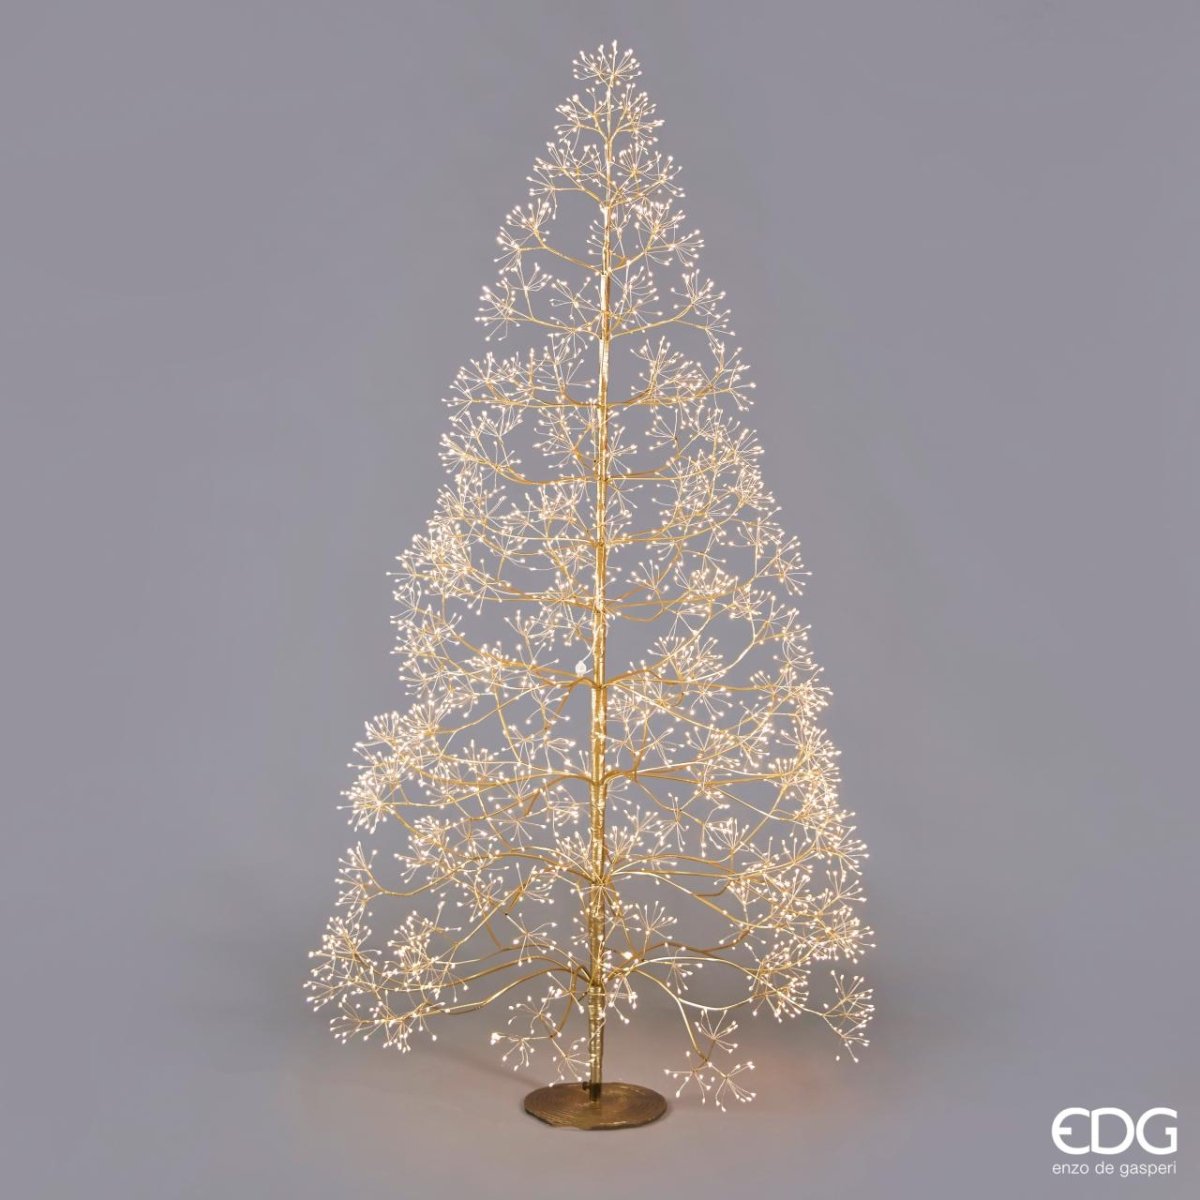 Edg - albero faggio luminoso 3000 led gold | rohome - Rohome